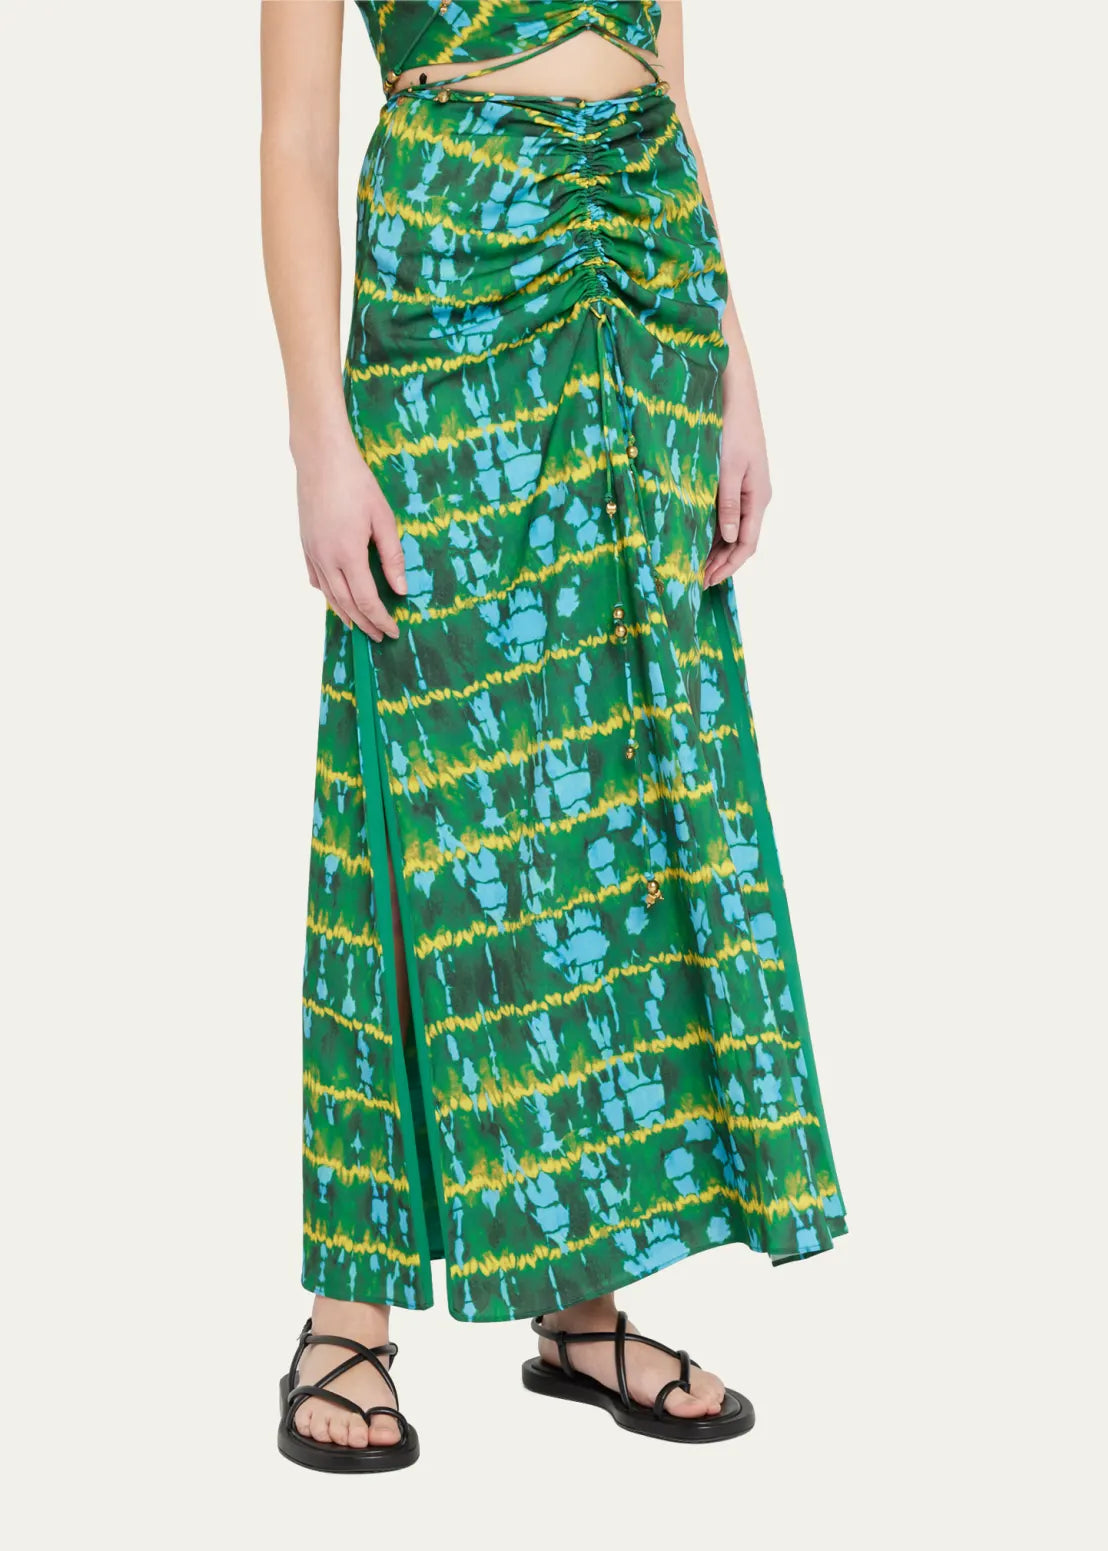 ALTUZARRA Safia Tie-Dye Skirt